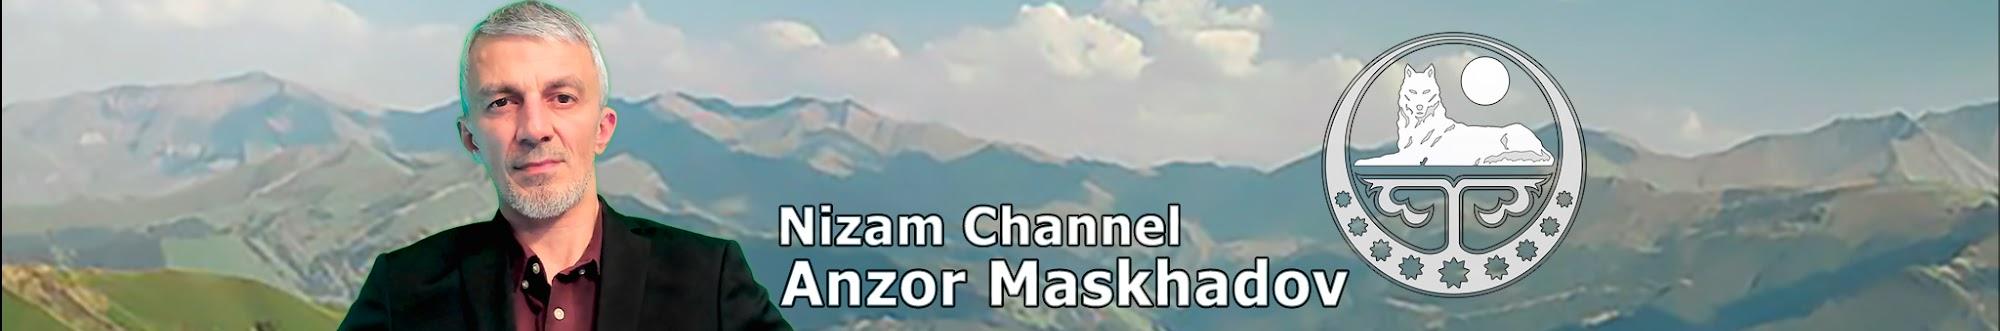 Nizam Channel